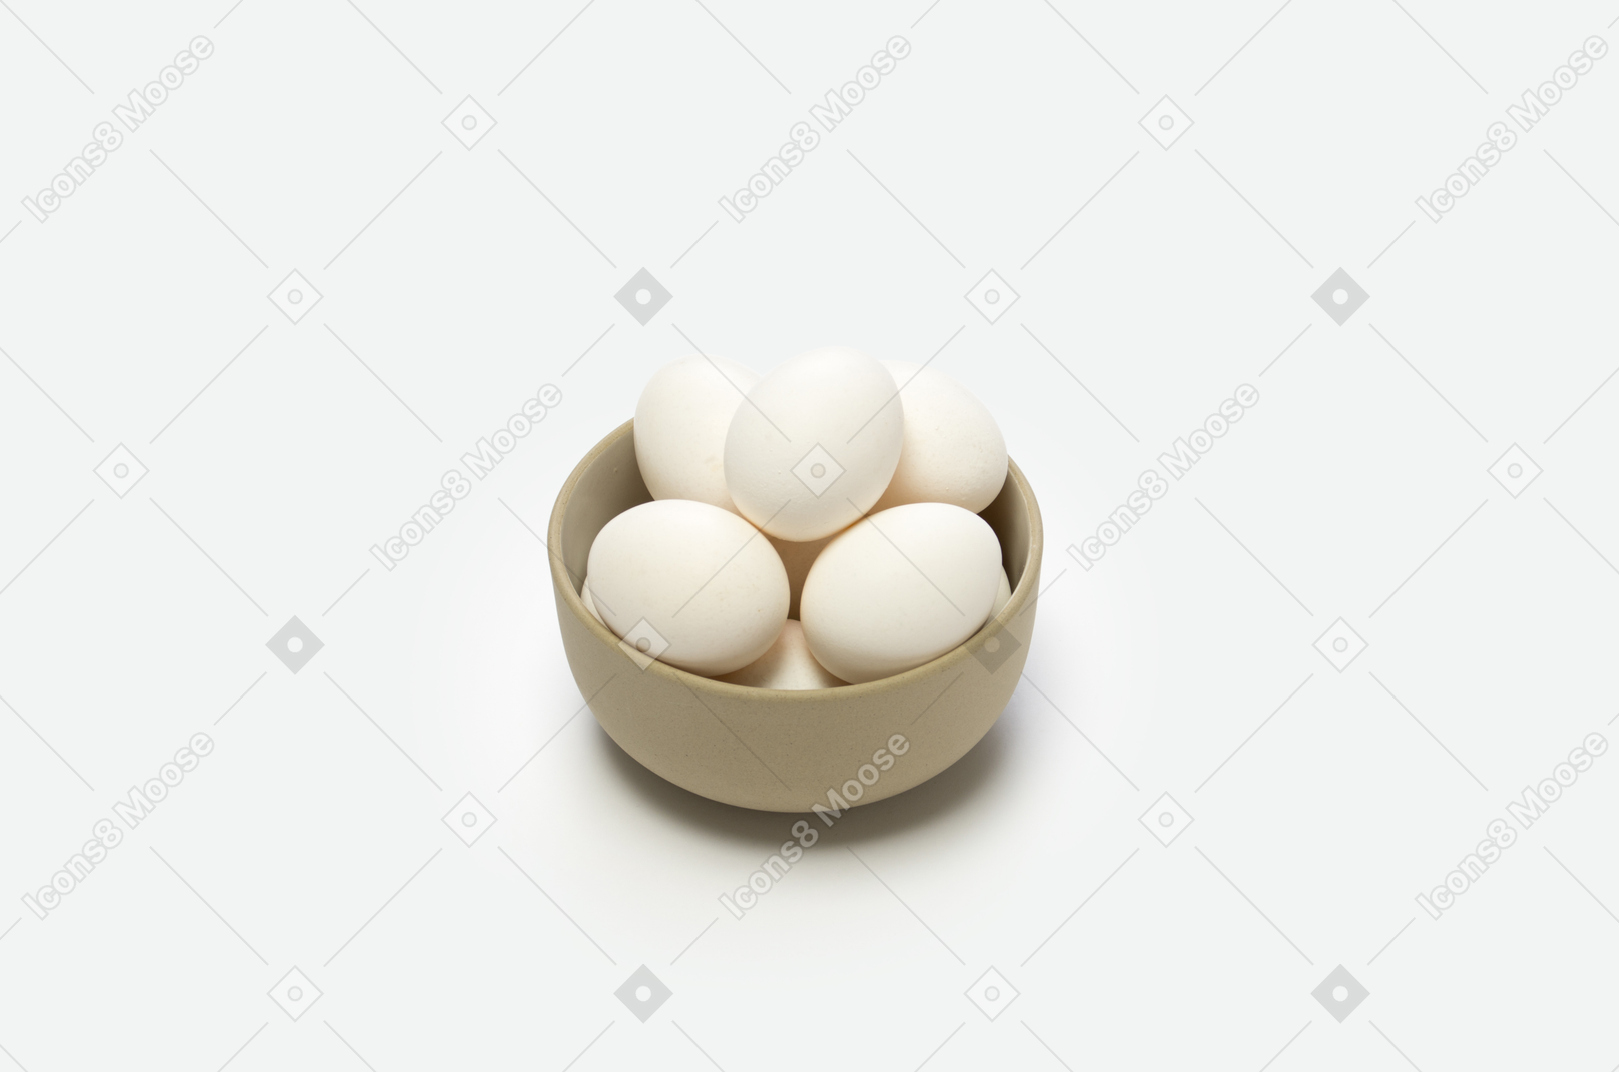 Os ovos são uma boa fonte de proteína